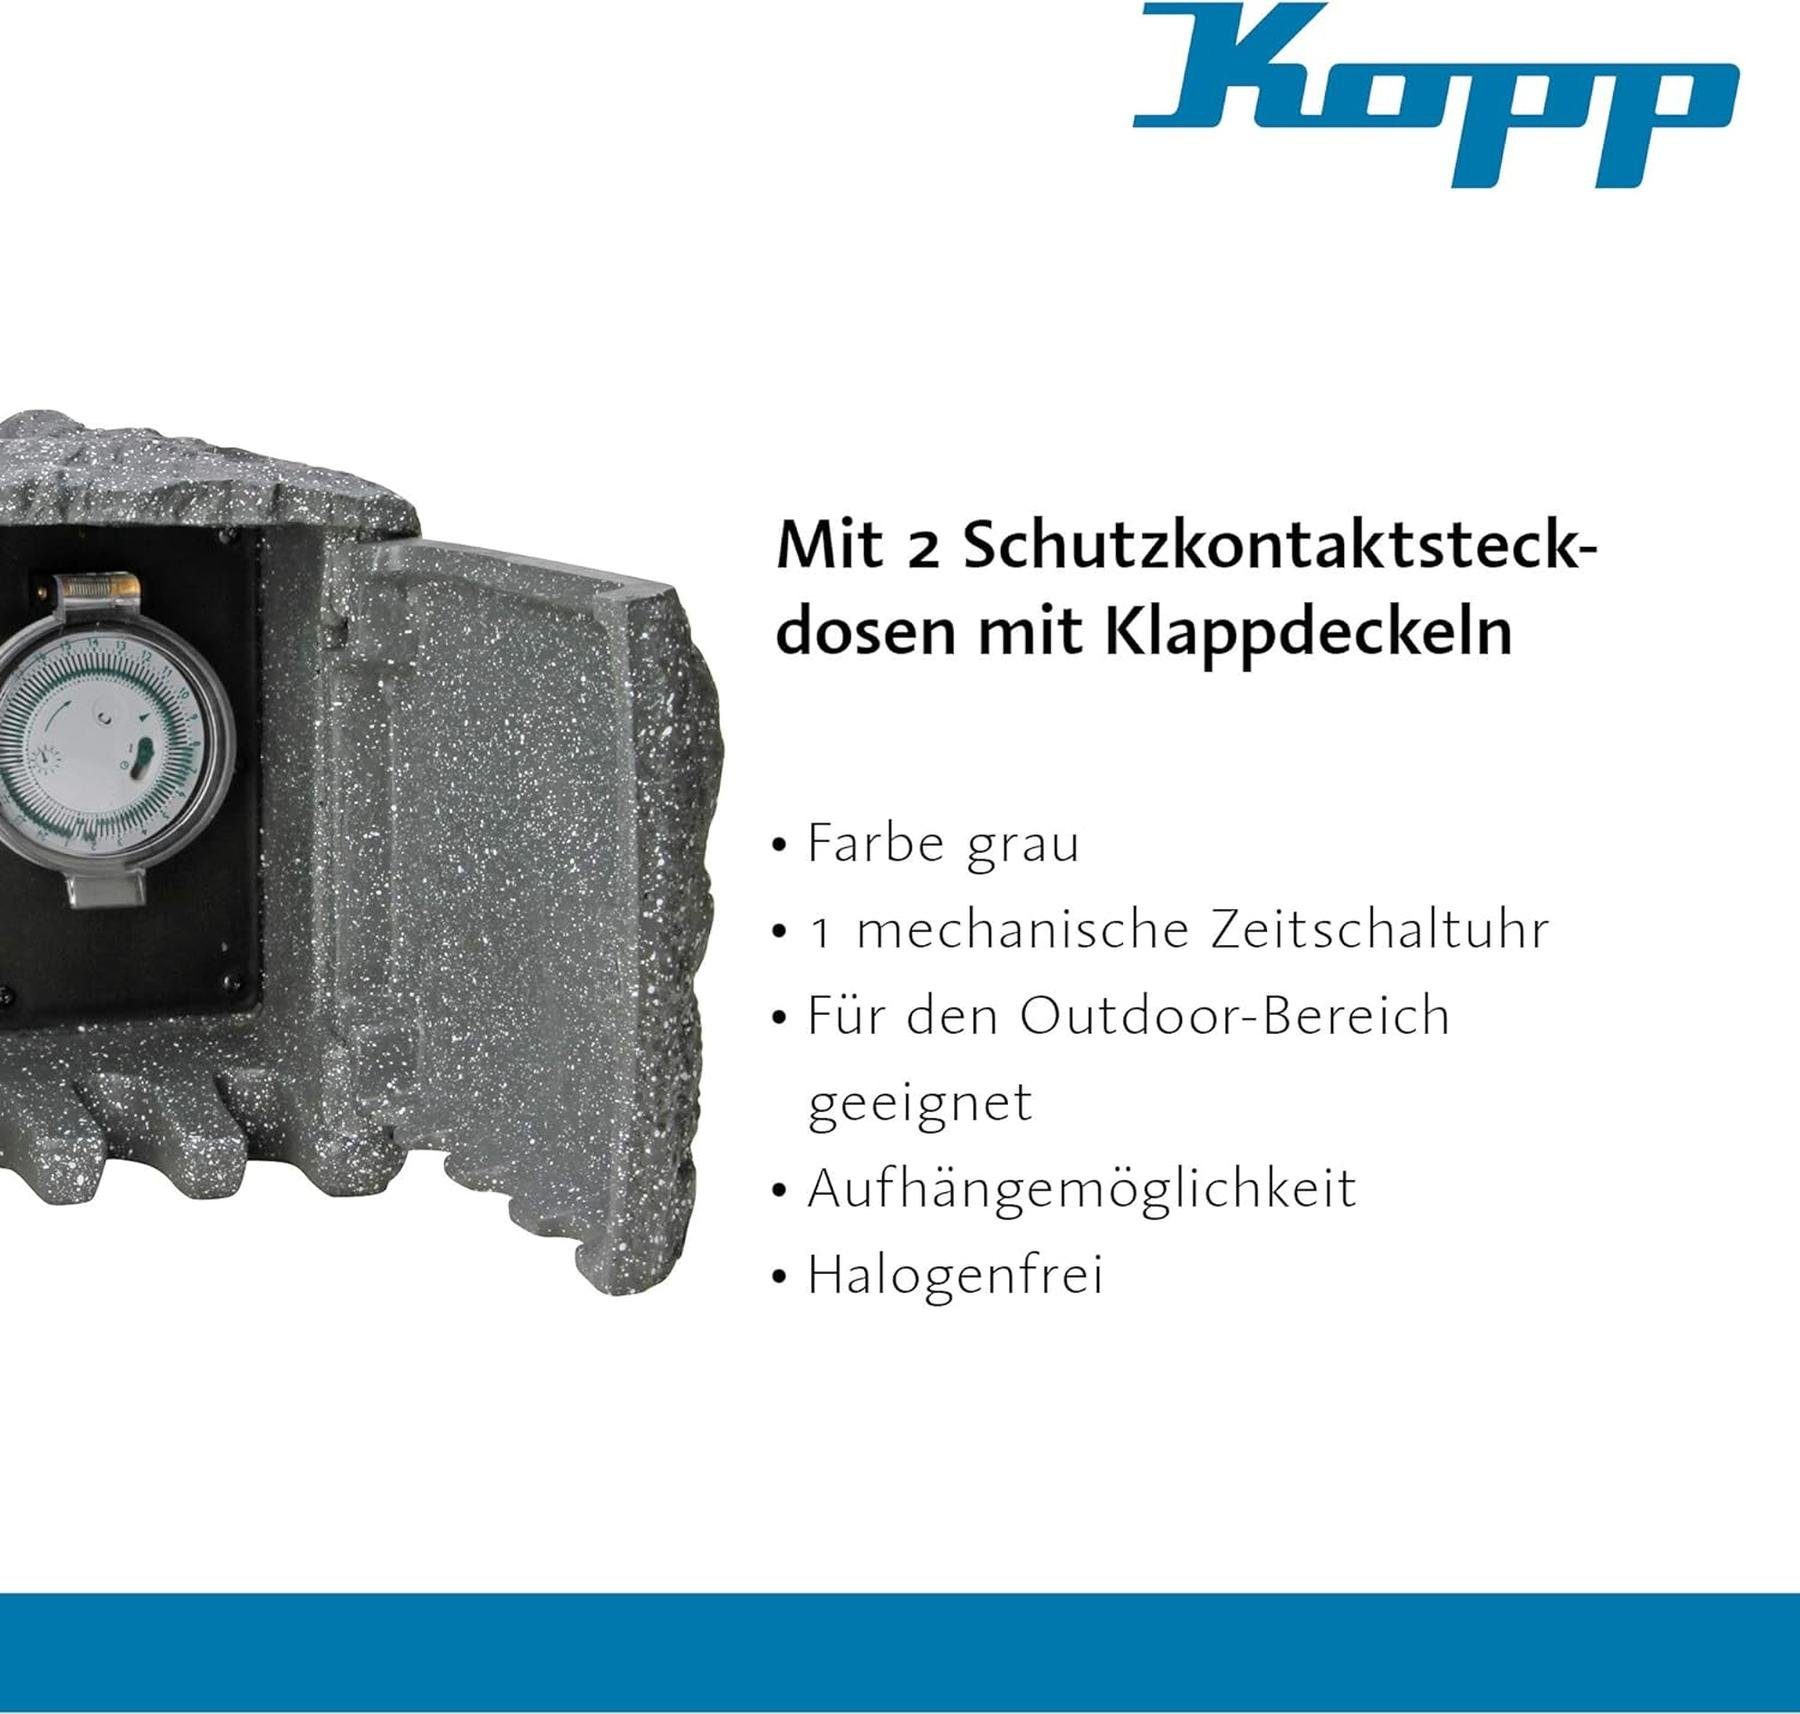 Steckdosen, mit 2 Steckdose Stein-Optik Kopp Überspannungsschutz Energiestation Schutzkontakt Kopp